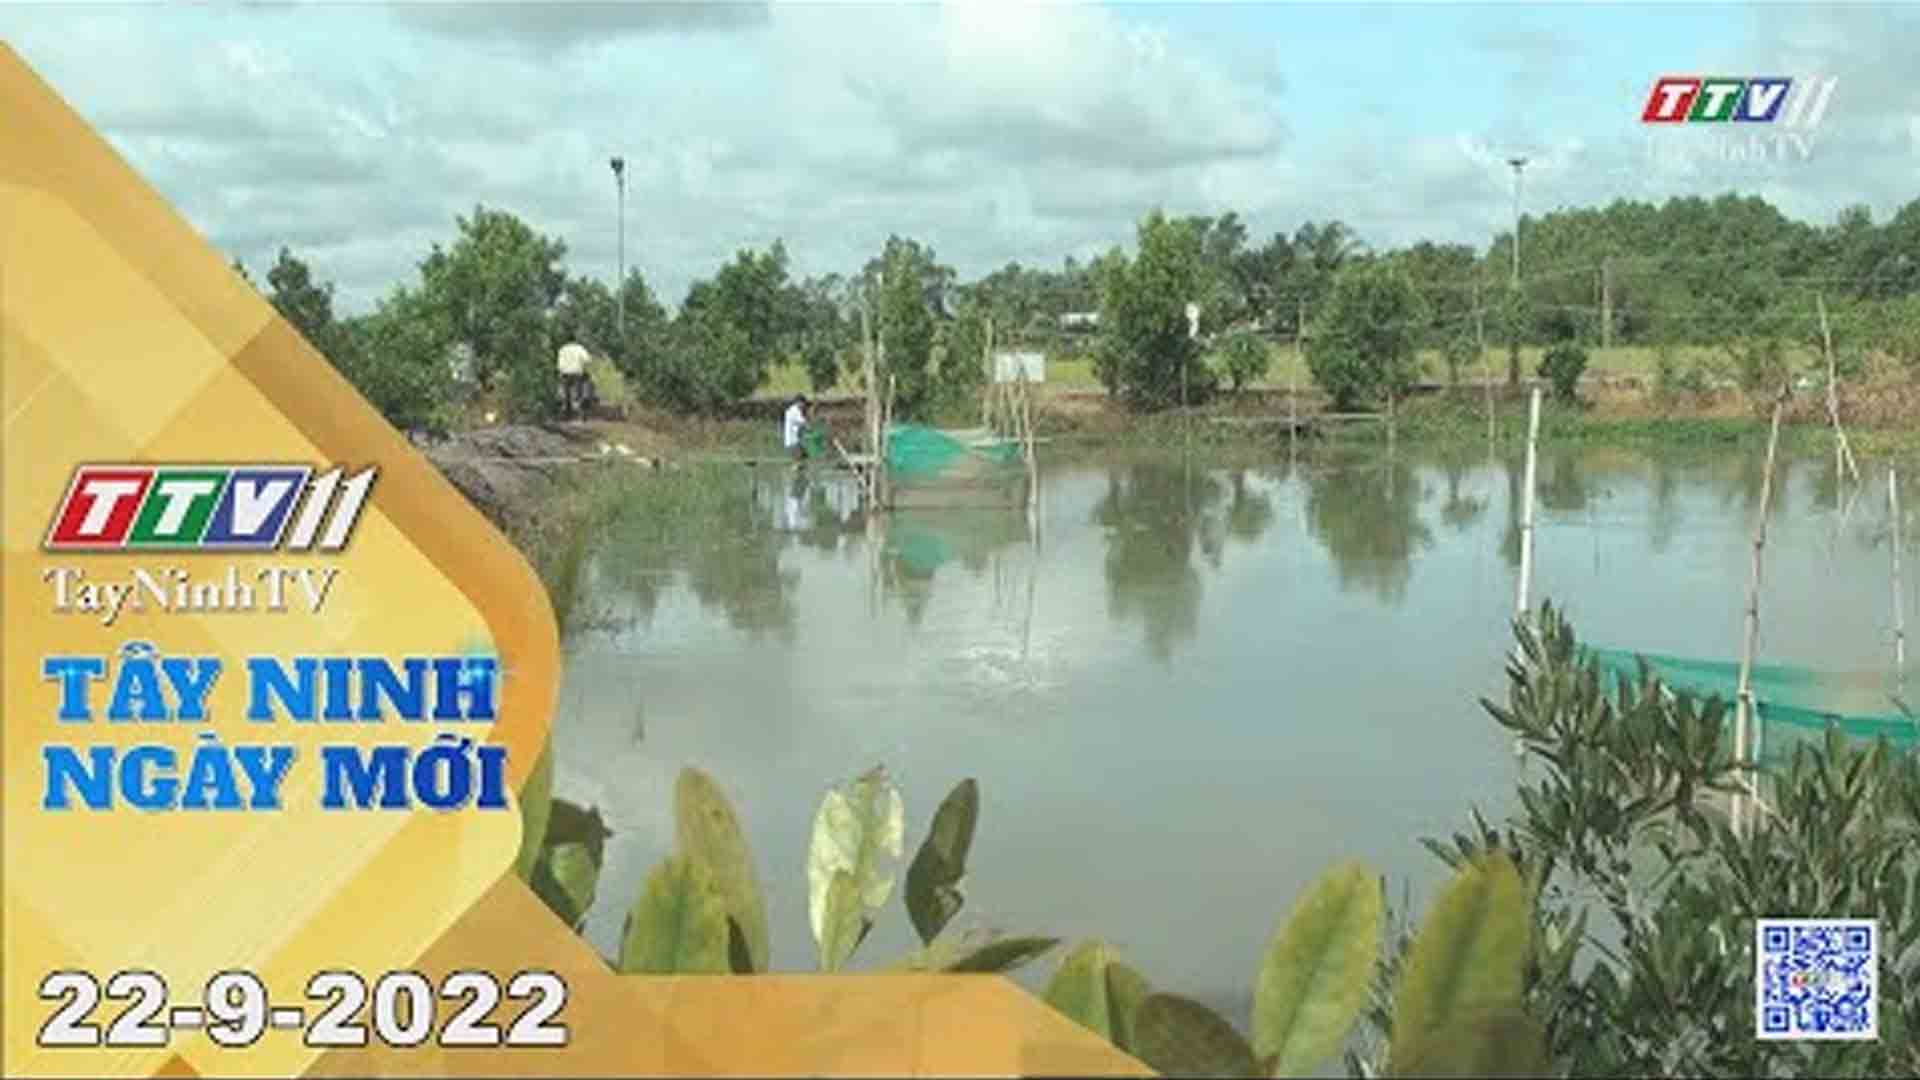 Tây Ninh ngày mới 22-9-2022 | Tin tức hôm nay | TayNinhTV